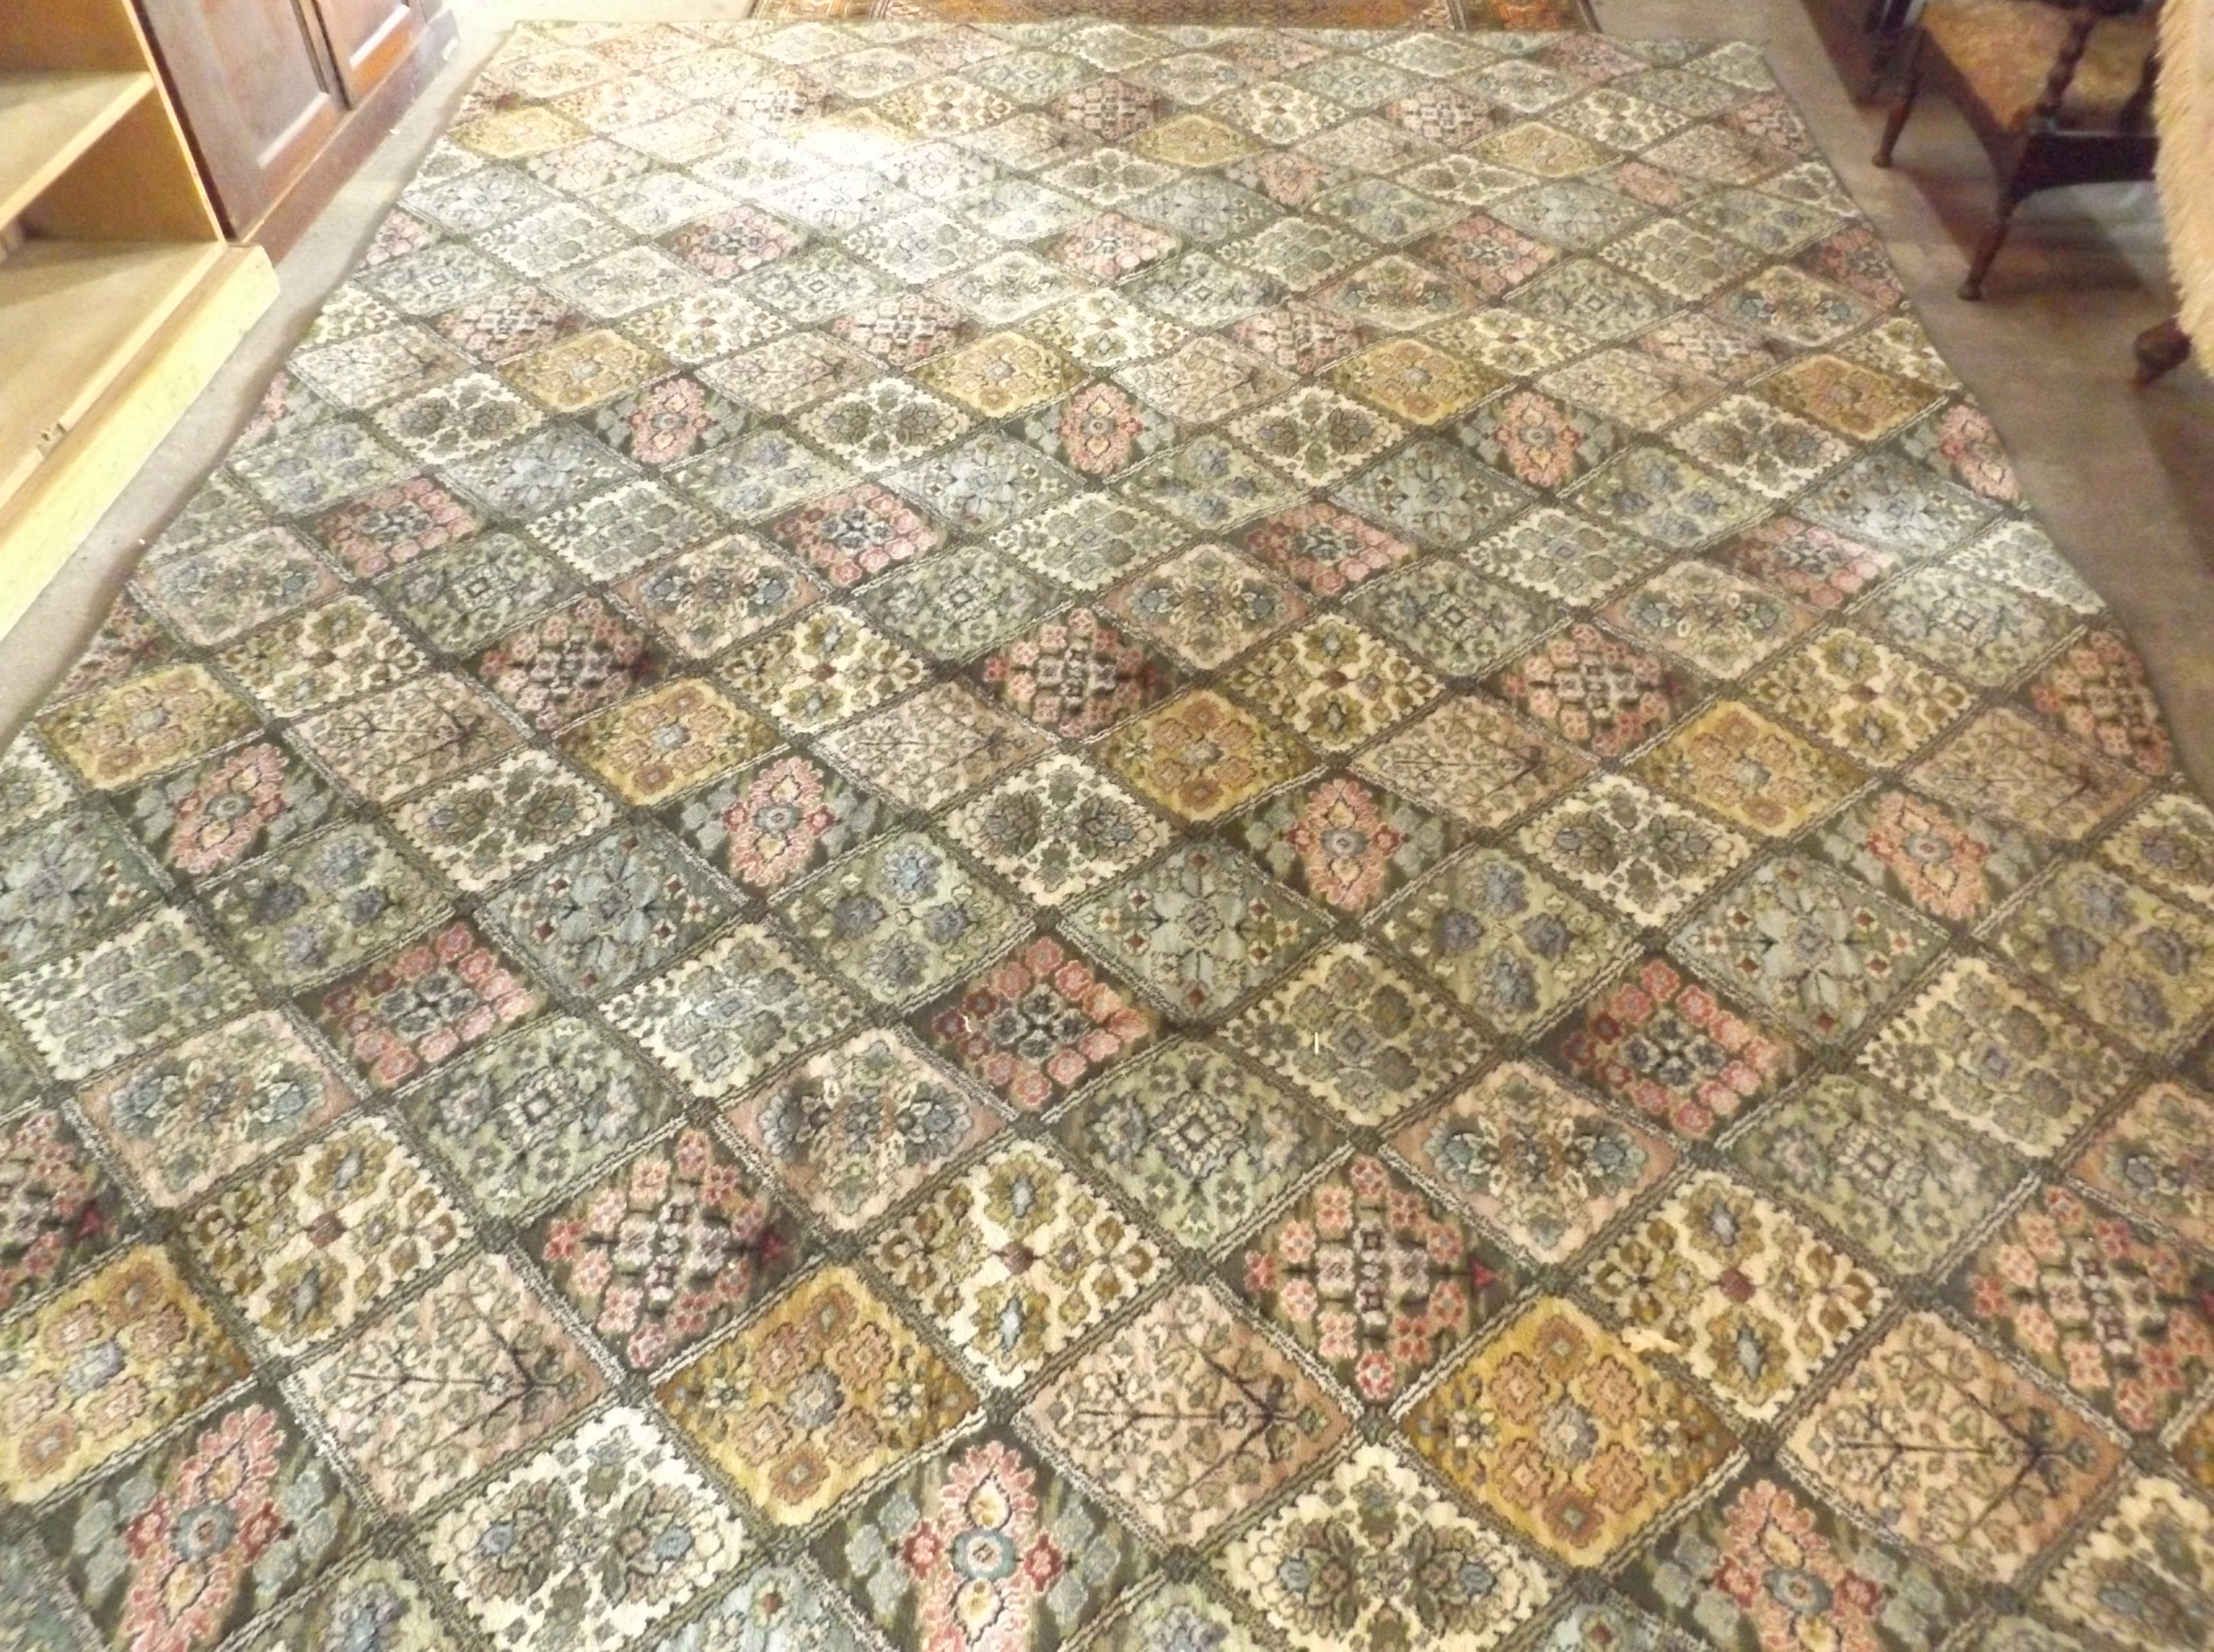 Bordered Axminster Carpet 12' x 9'6"